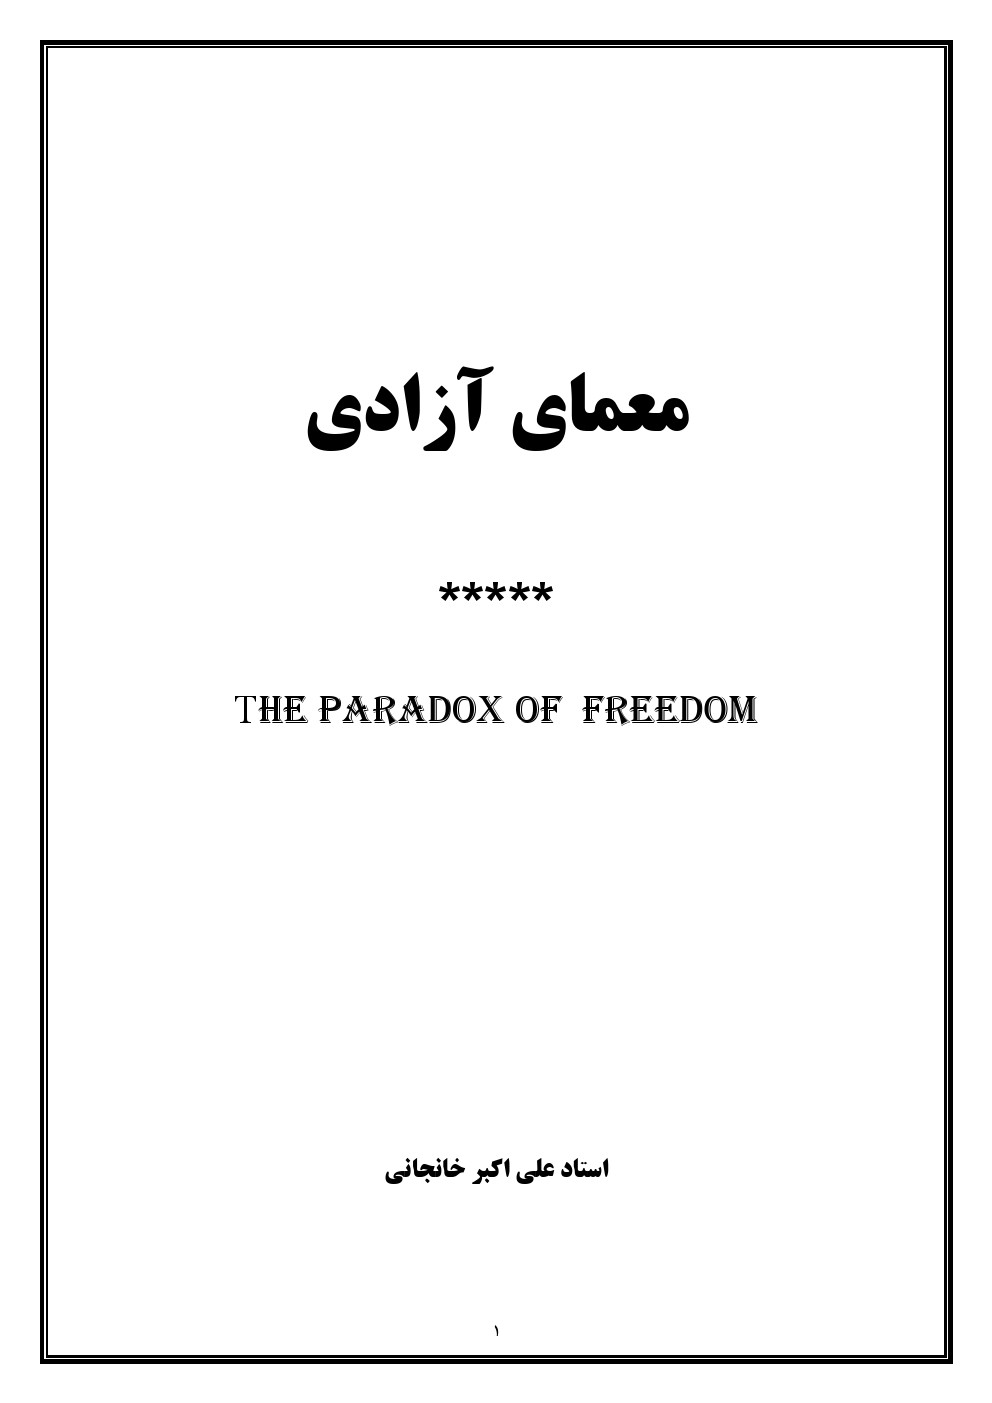 کتاب معمای آزادی